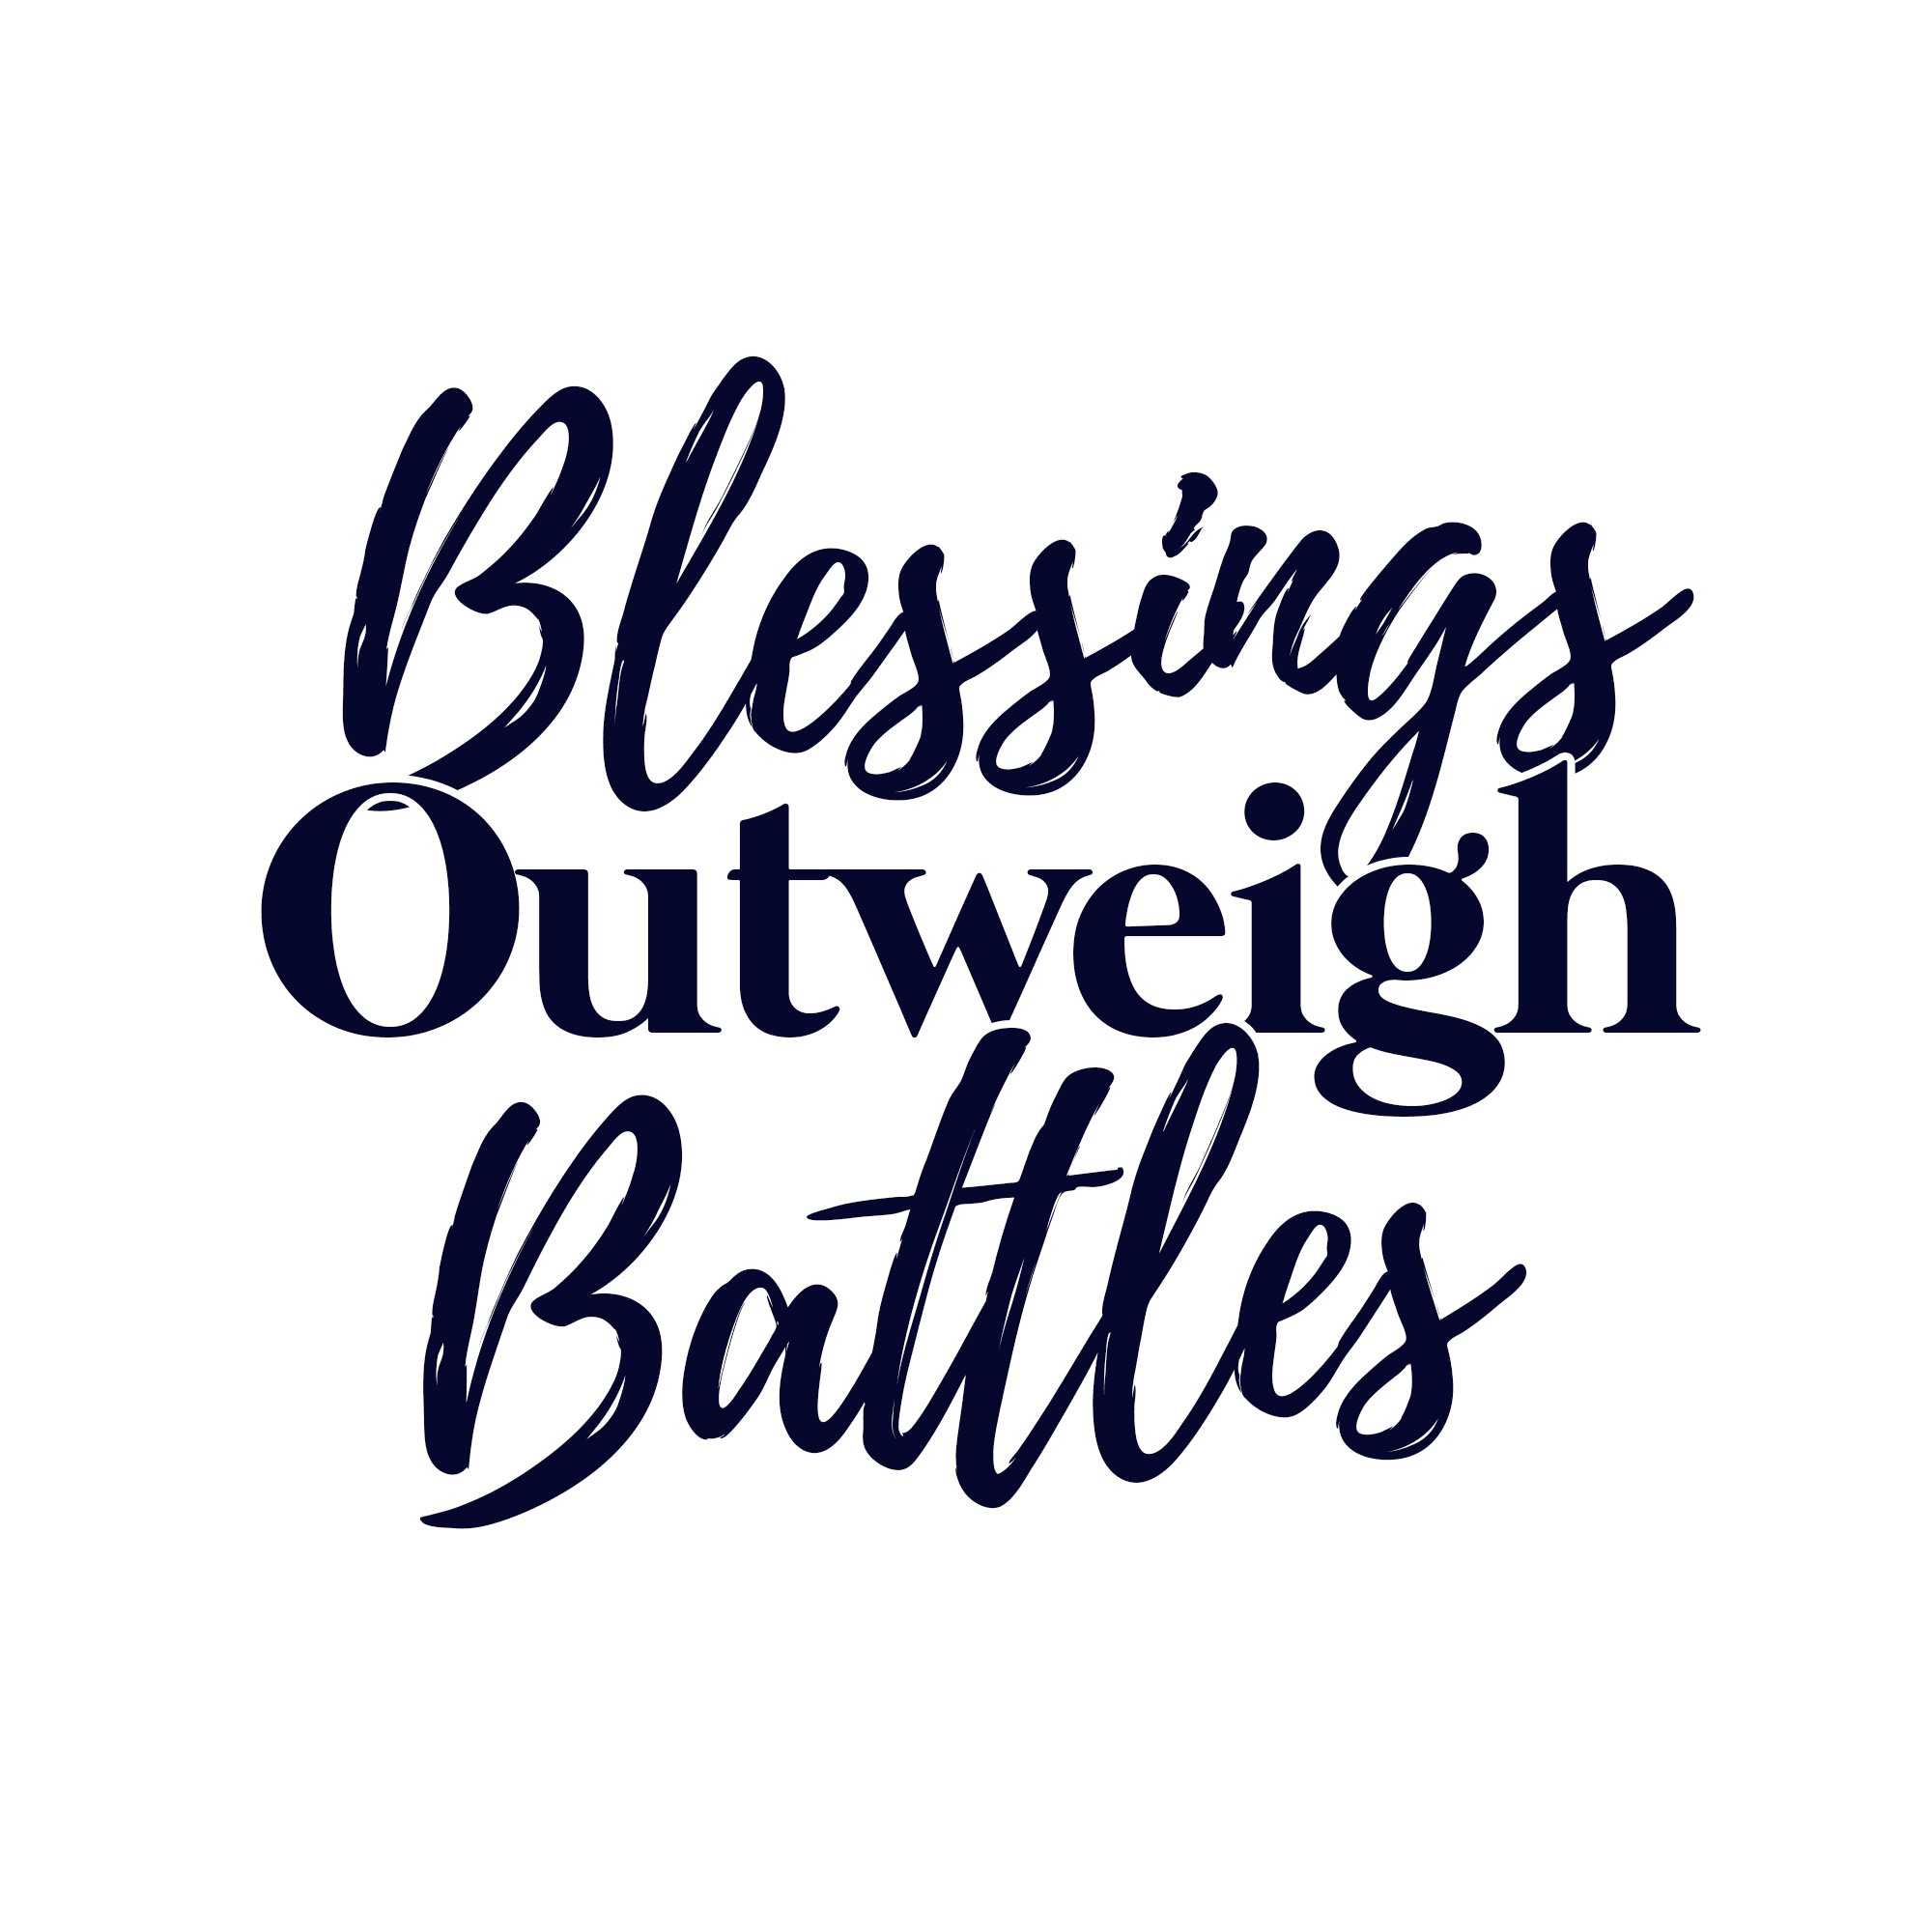 Blessings Outweigh Battles